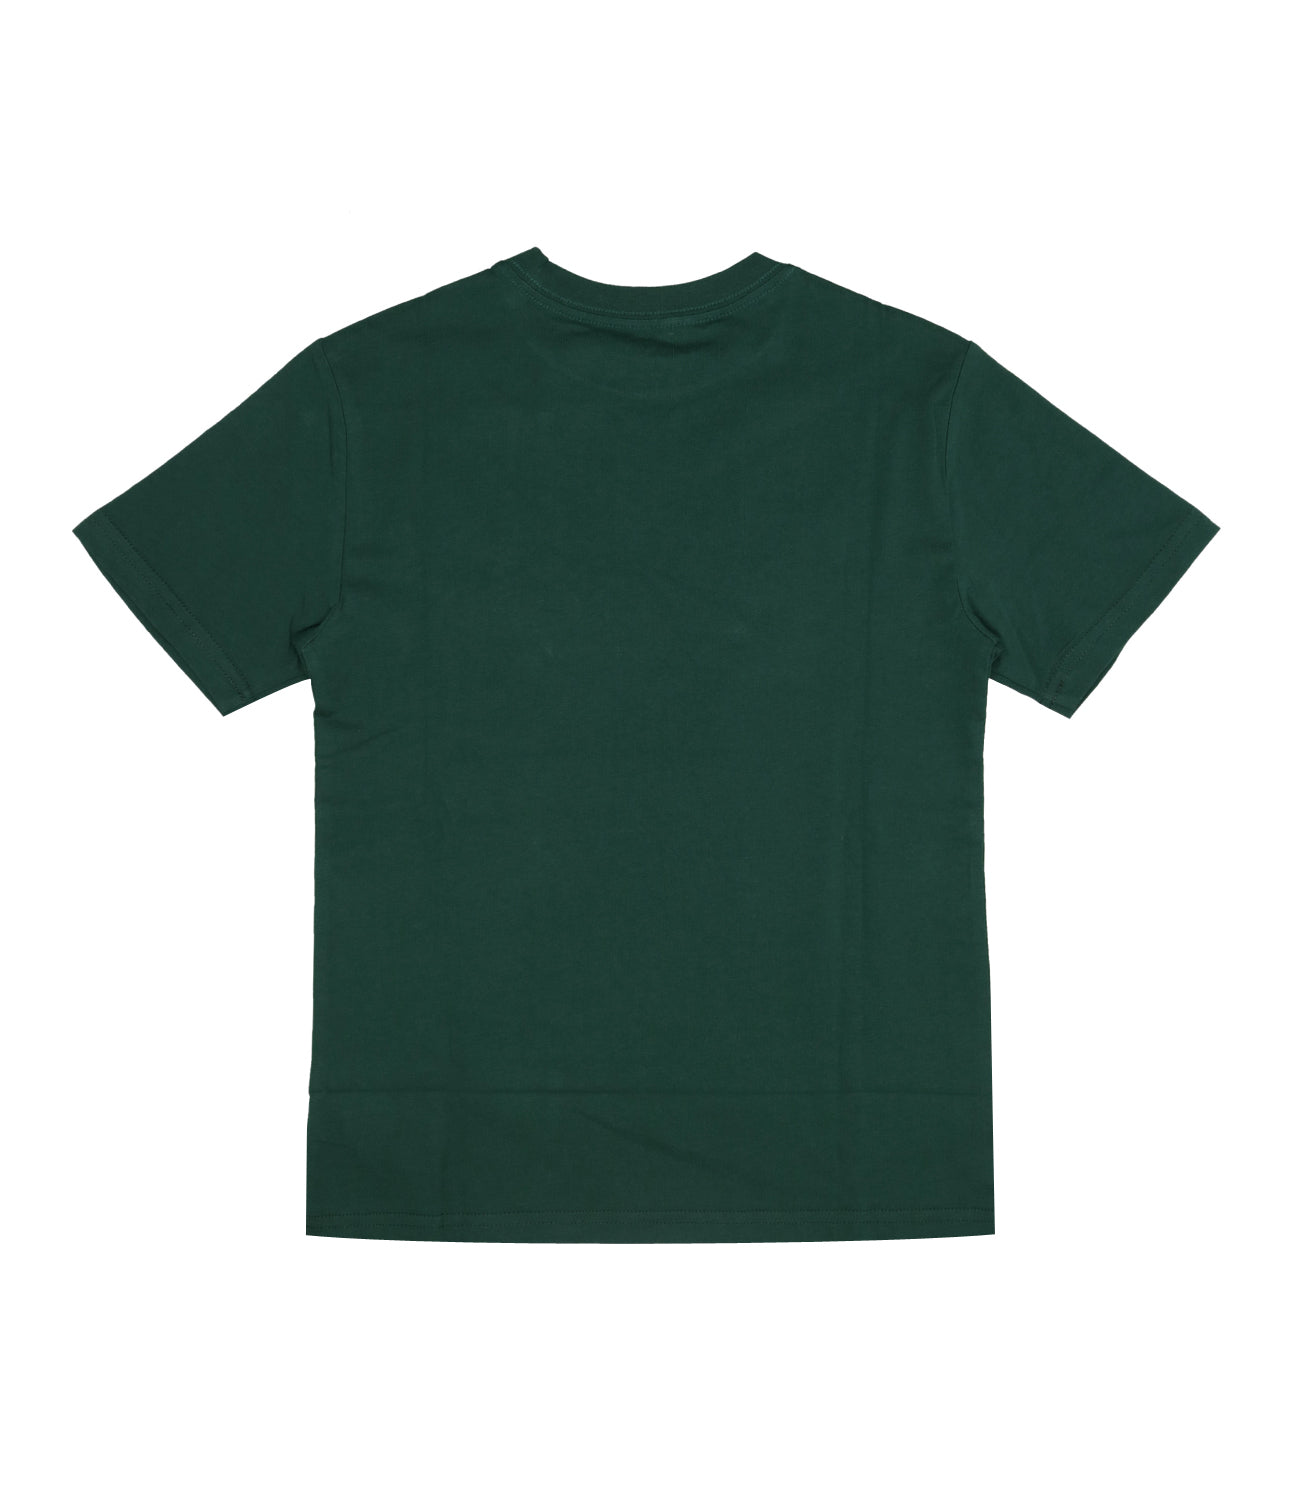 Ralph Lauren Childrenswear |T-Shirt Green